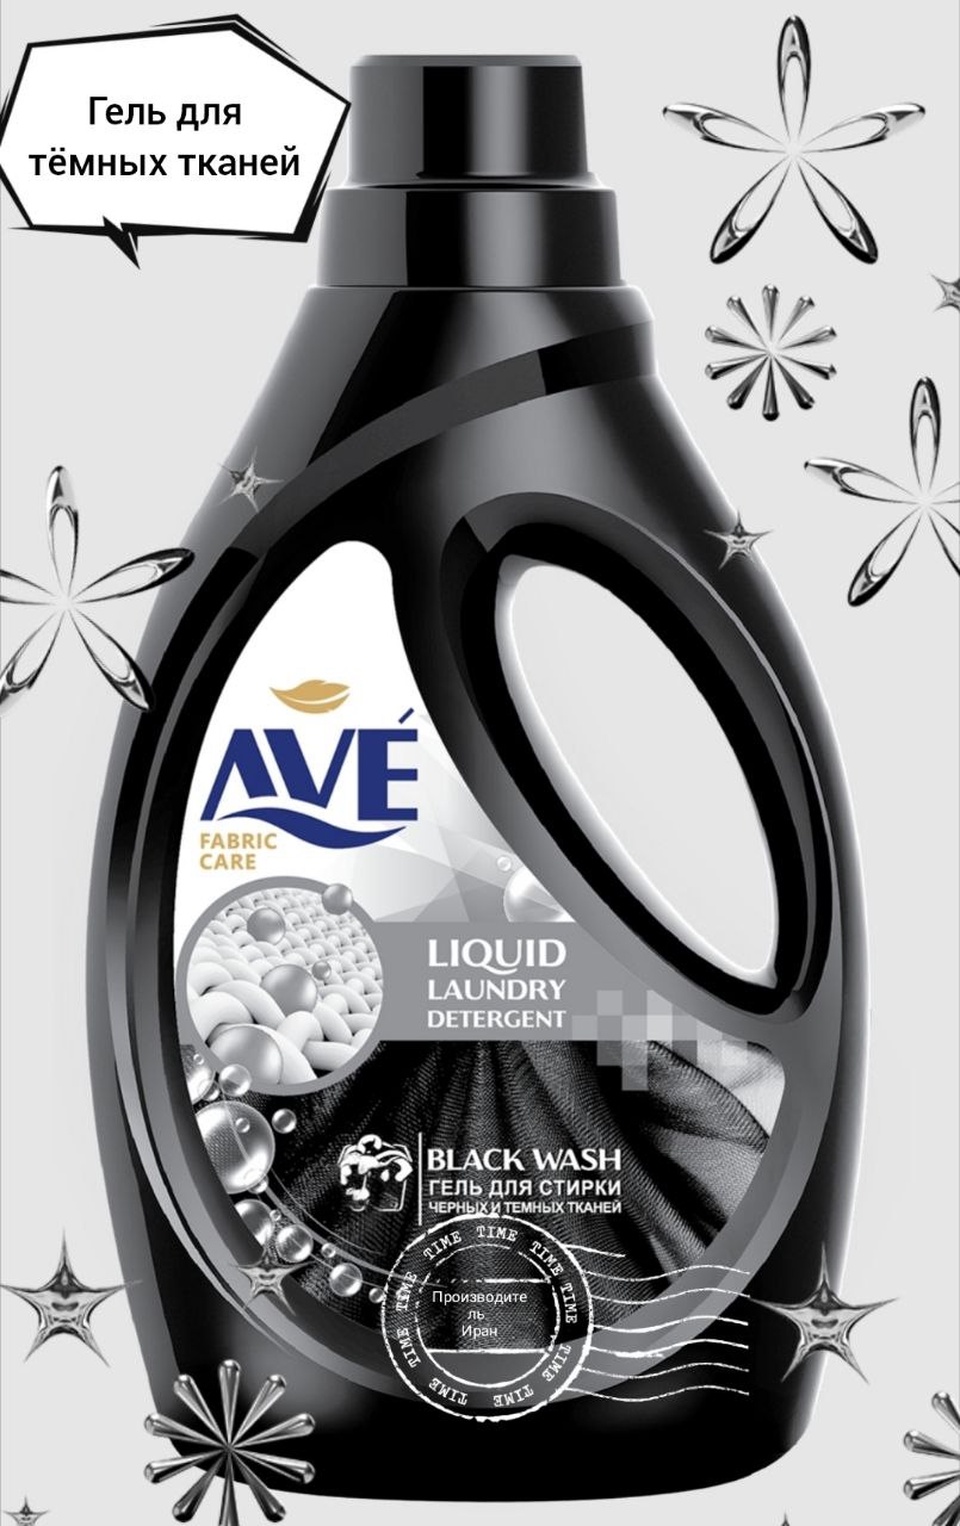 AVE гель для стирки для черных и темных тканей, 1,9 л - 500 ₽, заказать онлайн.